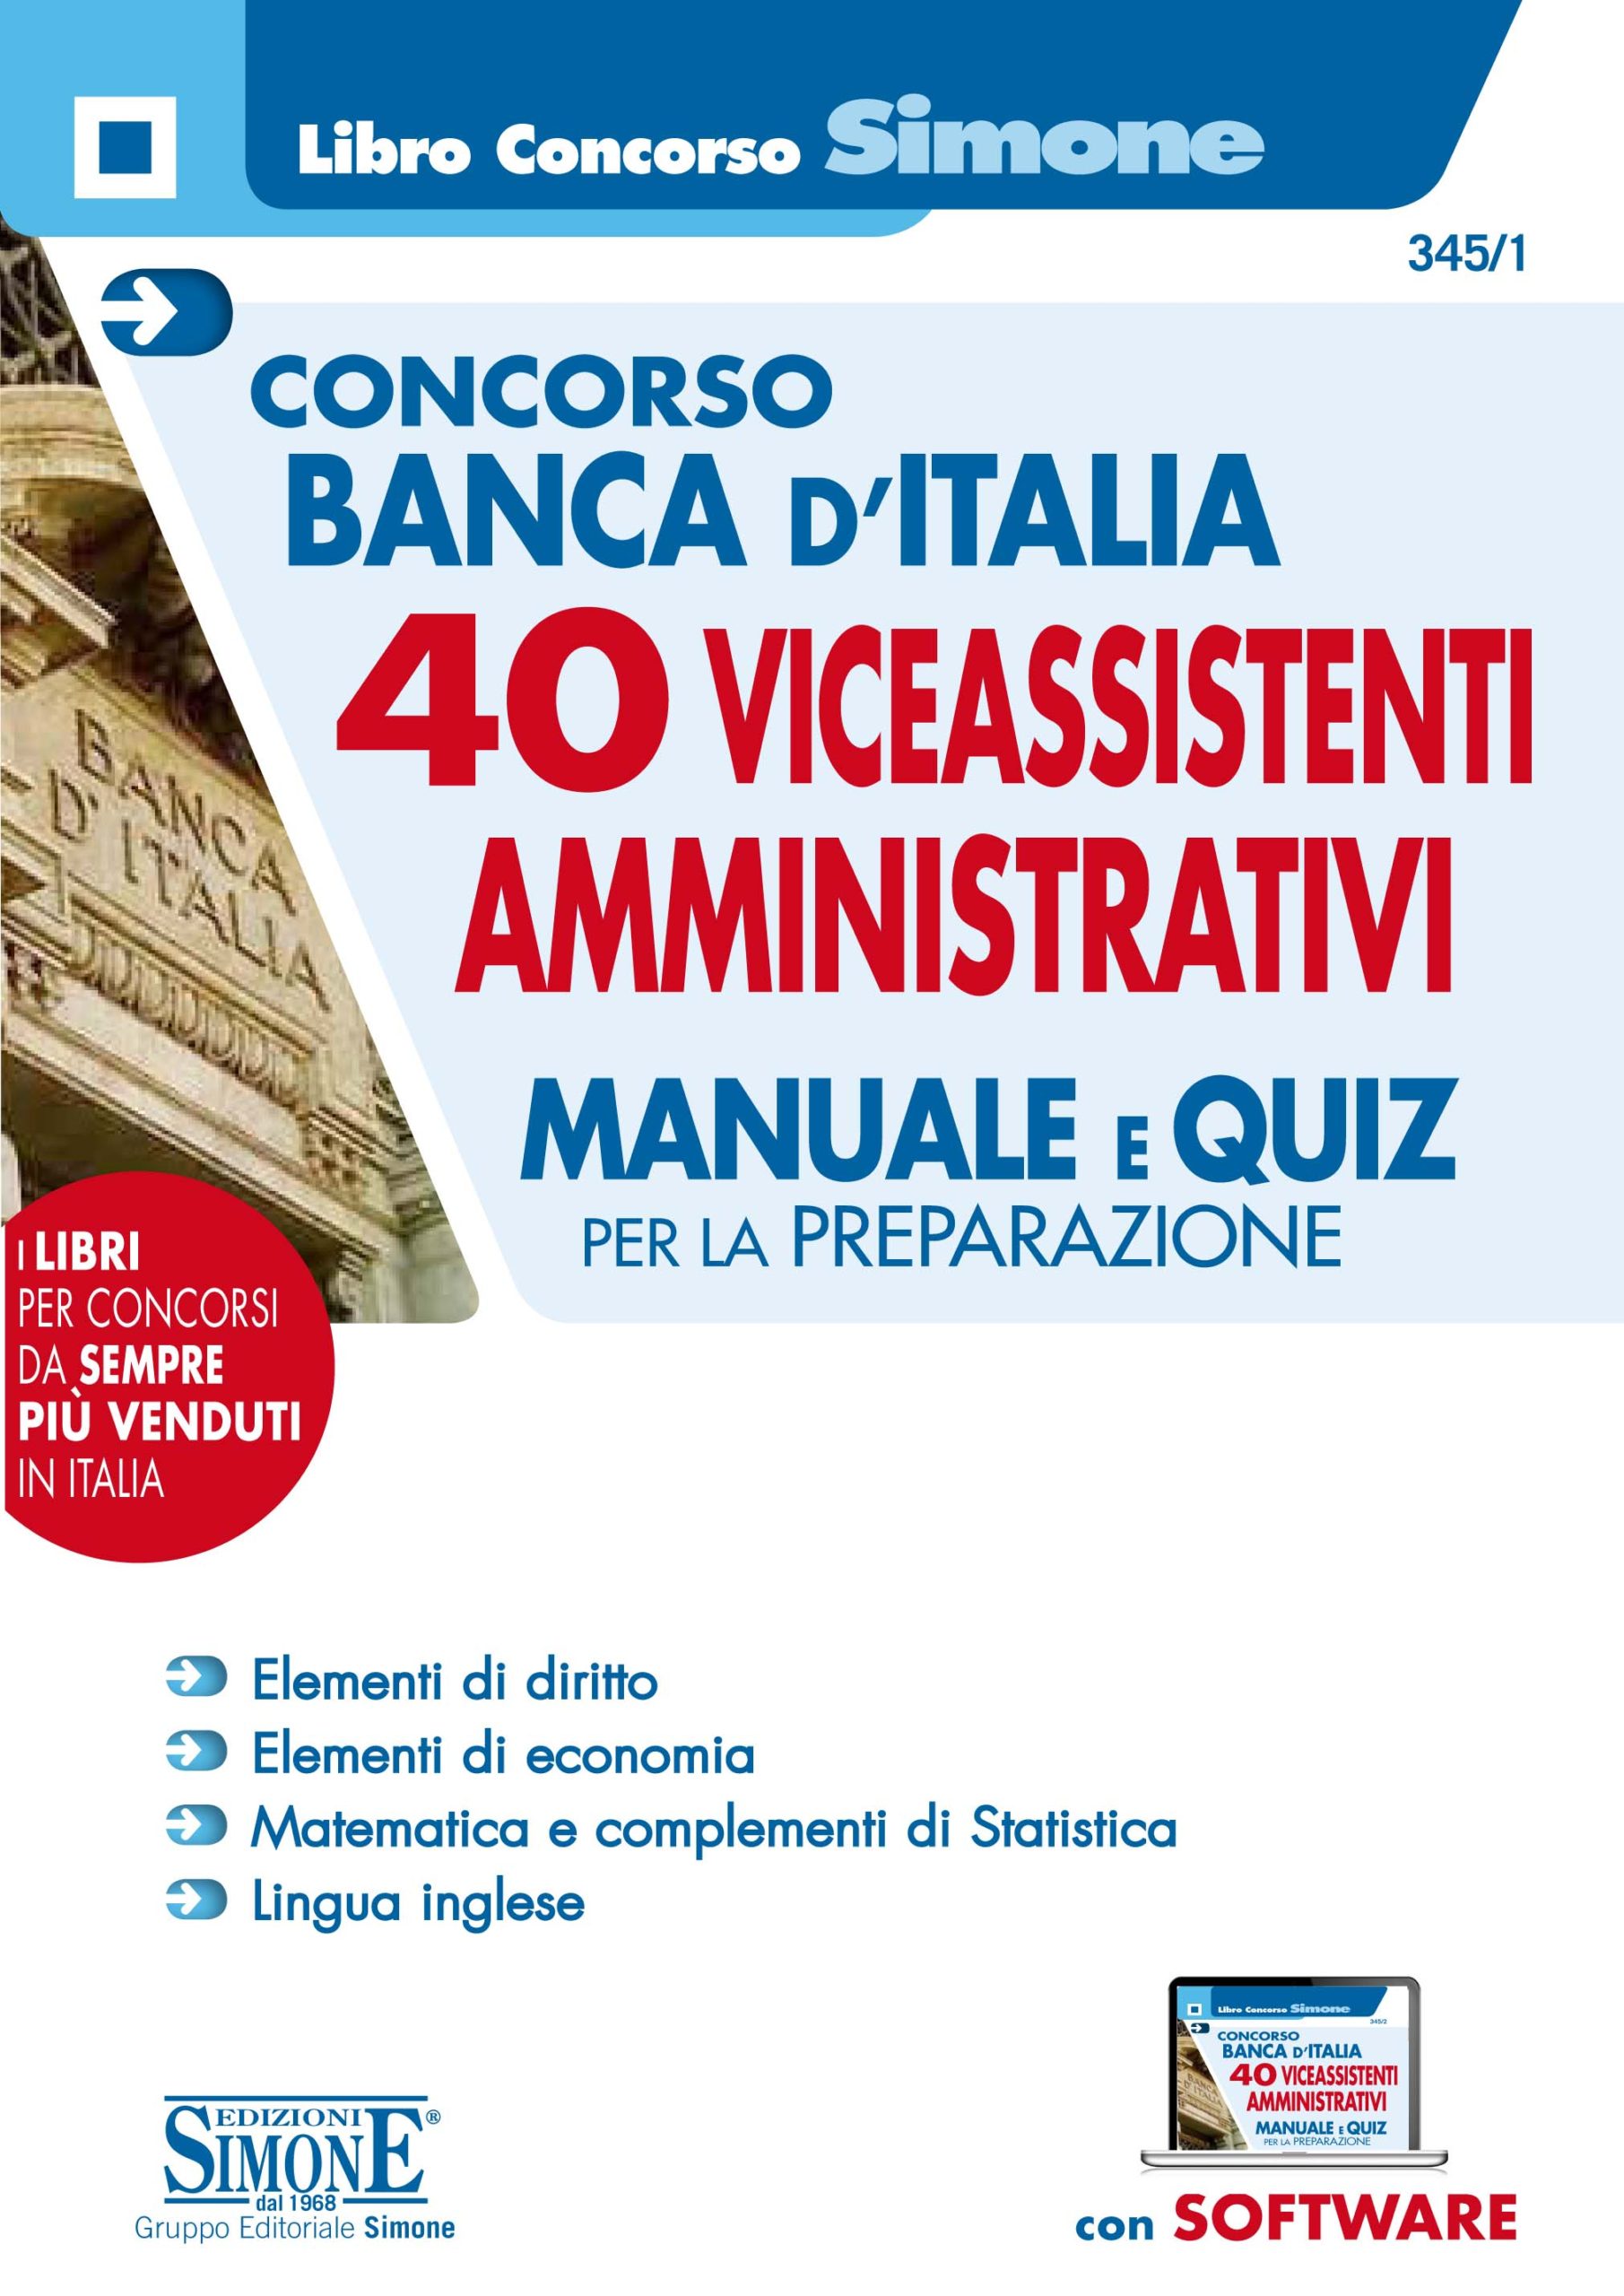 345 1 Concorso Banca D Italia 40 Vice Assistenti Profilo Amministrativo Manuale E Quiz Per La Preparazione Simone Concorsi News Concorsi Pubblici